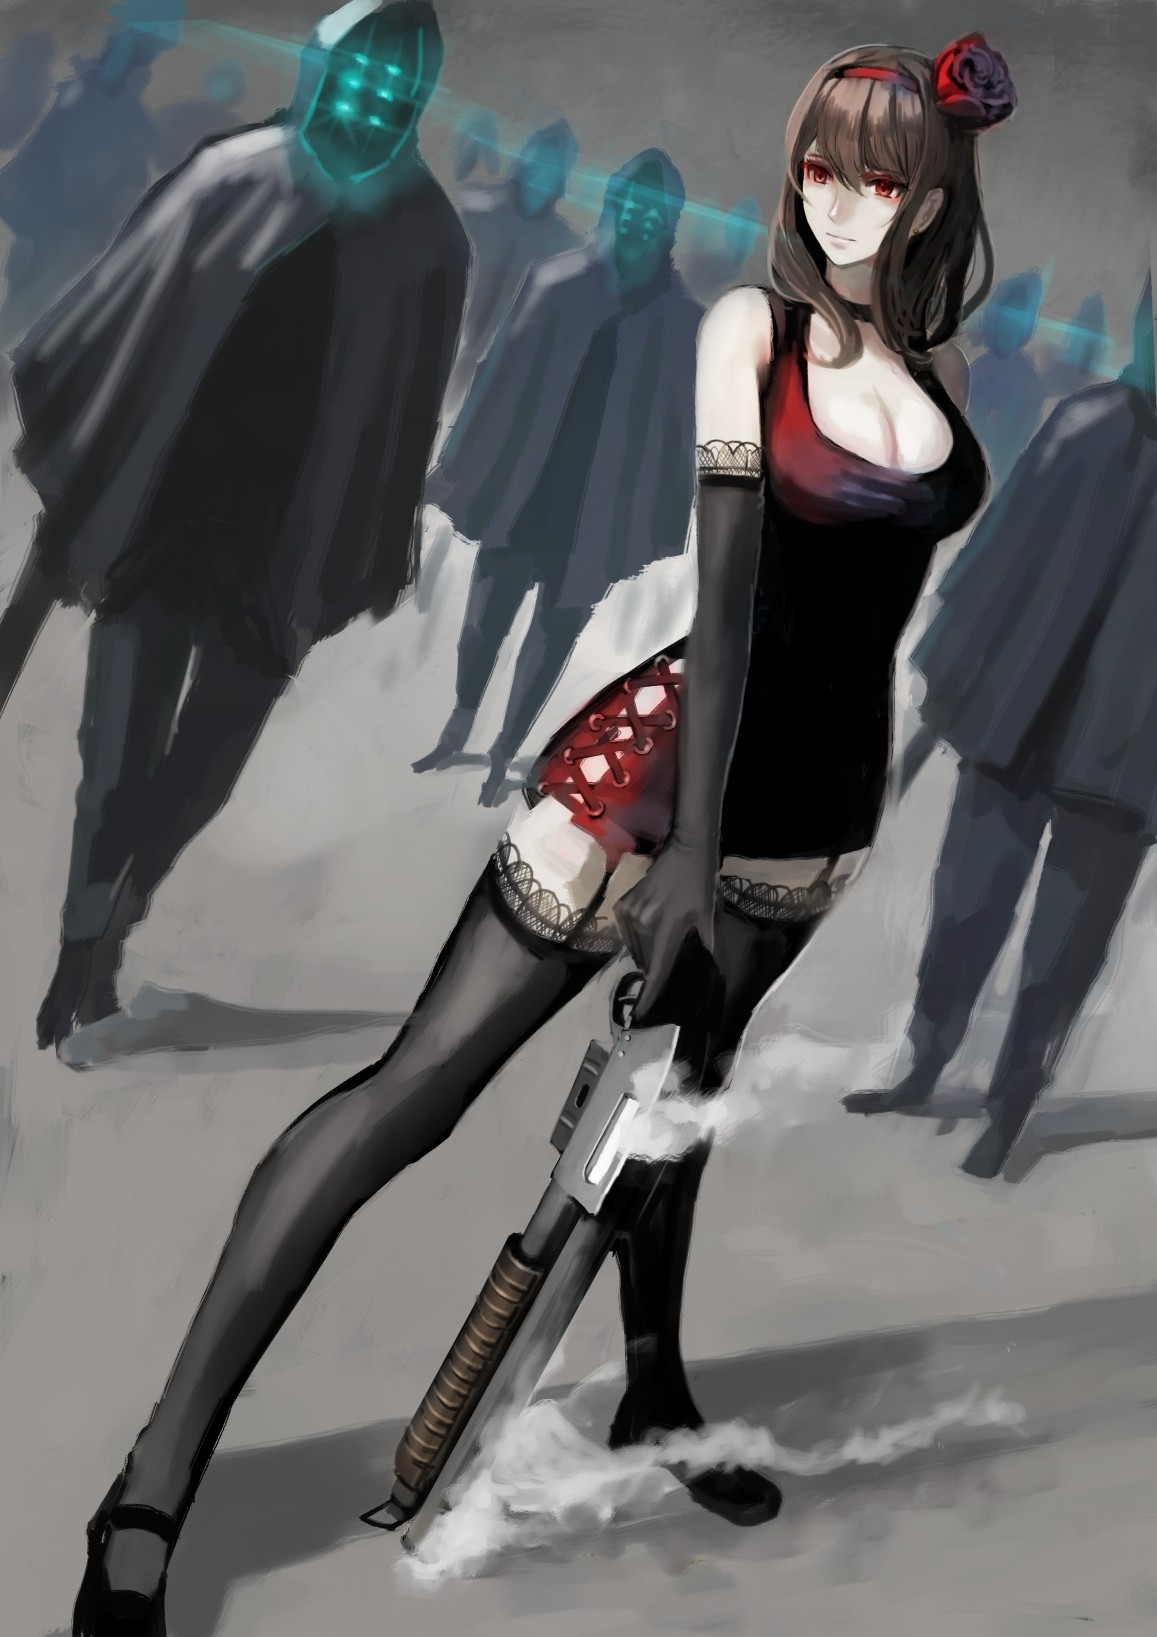 Anime 1157x1637 anime anime girls dress stockings open shirt long hair brunette red eyes shotgun weapon gun